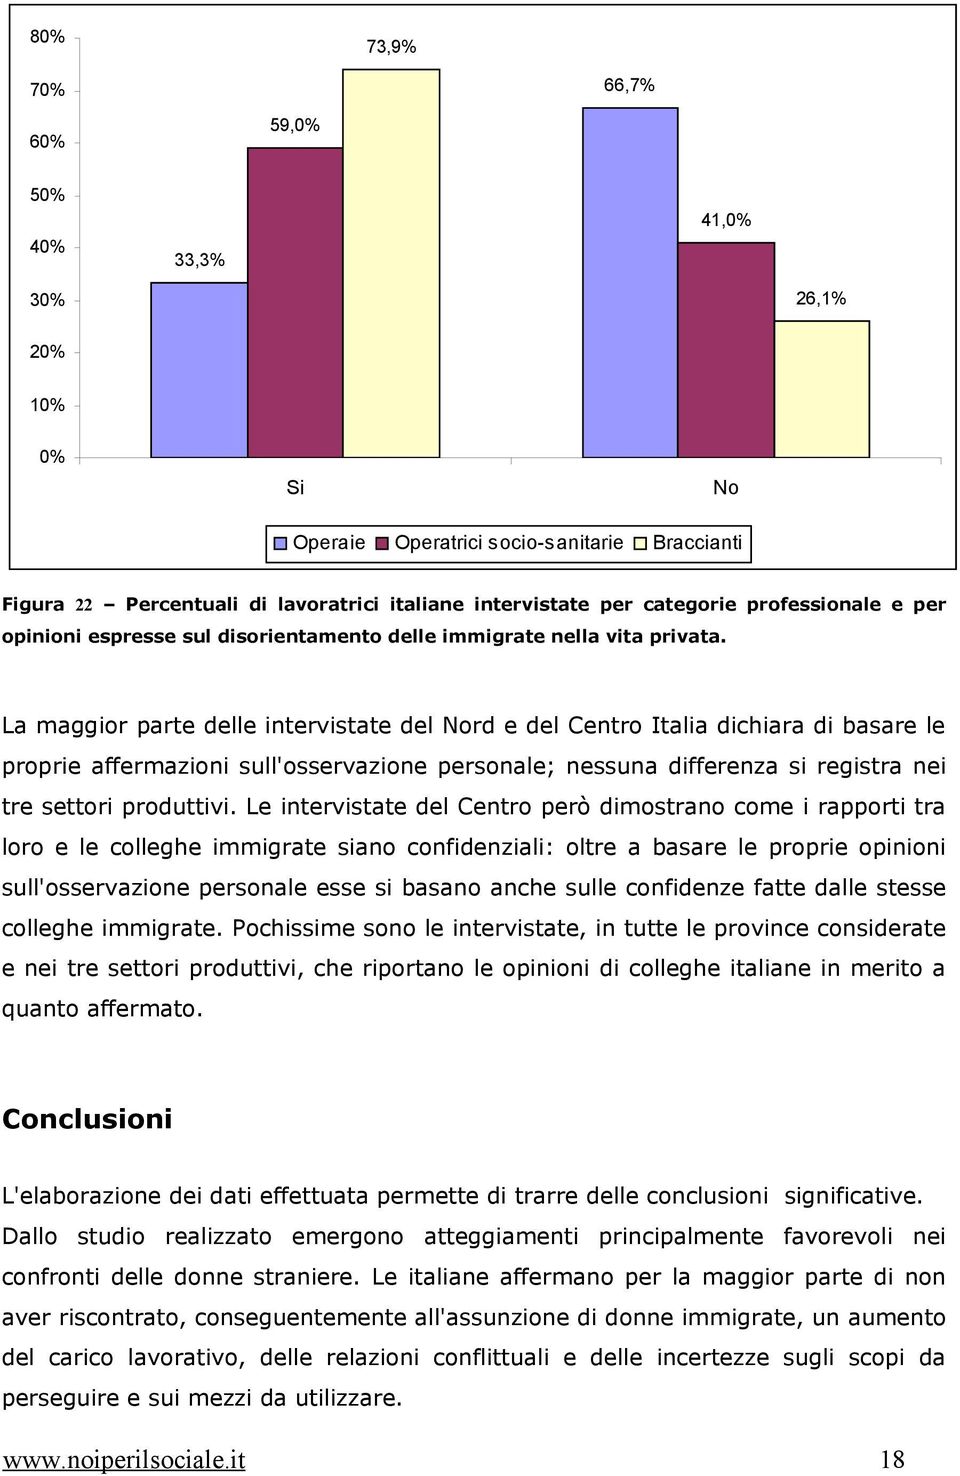 La maggior parte delle intervistate del rd e del Centro Italia dichiara di basare le proprie affermazioni sull'osservazione personale; nessuna differenza si registra nei tre settori produttivi.